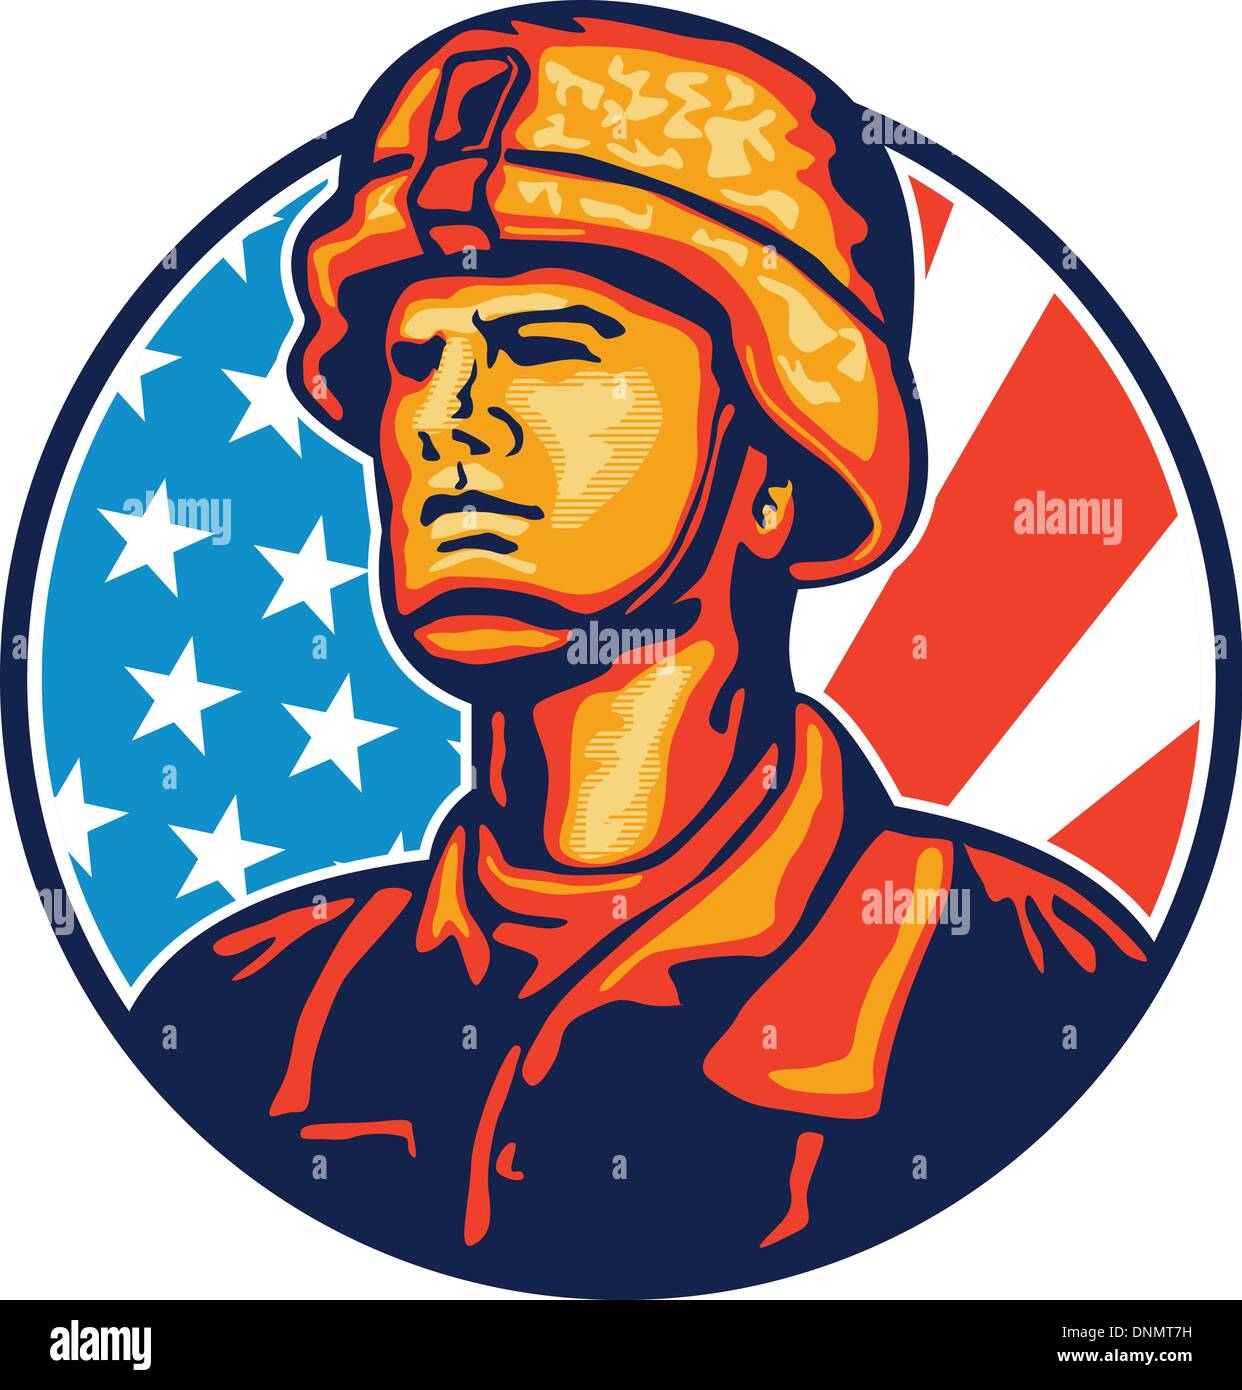 Illustrazione di un soldato americano veterani militari di guardare avanti con gli Stati Uniti a stelle e strisce bandiera in background impostata all'interno del cerchio. Illustrazione Vettoriale